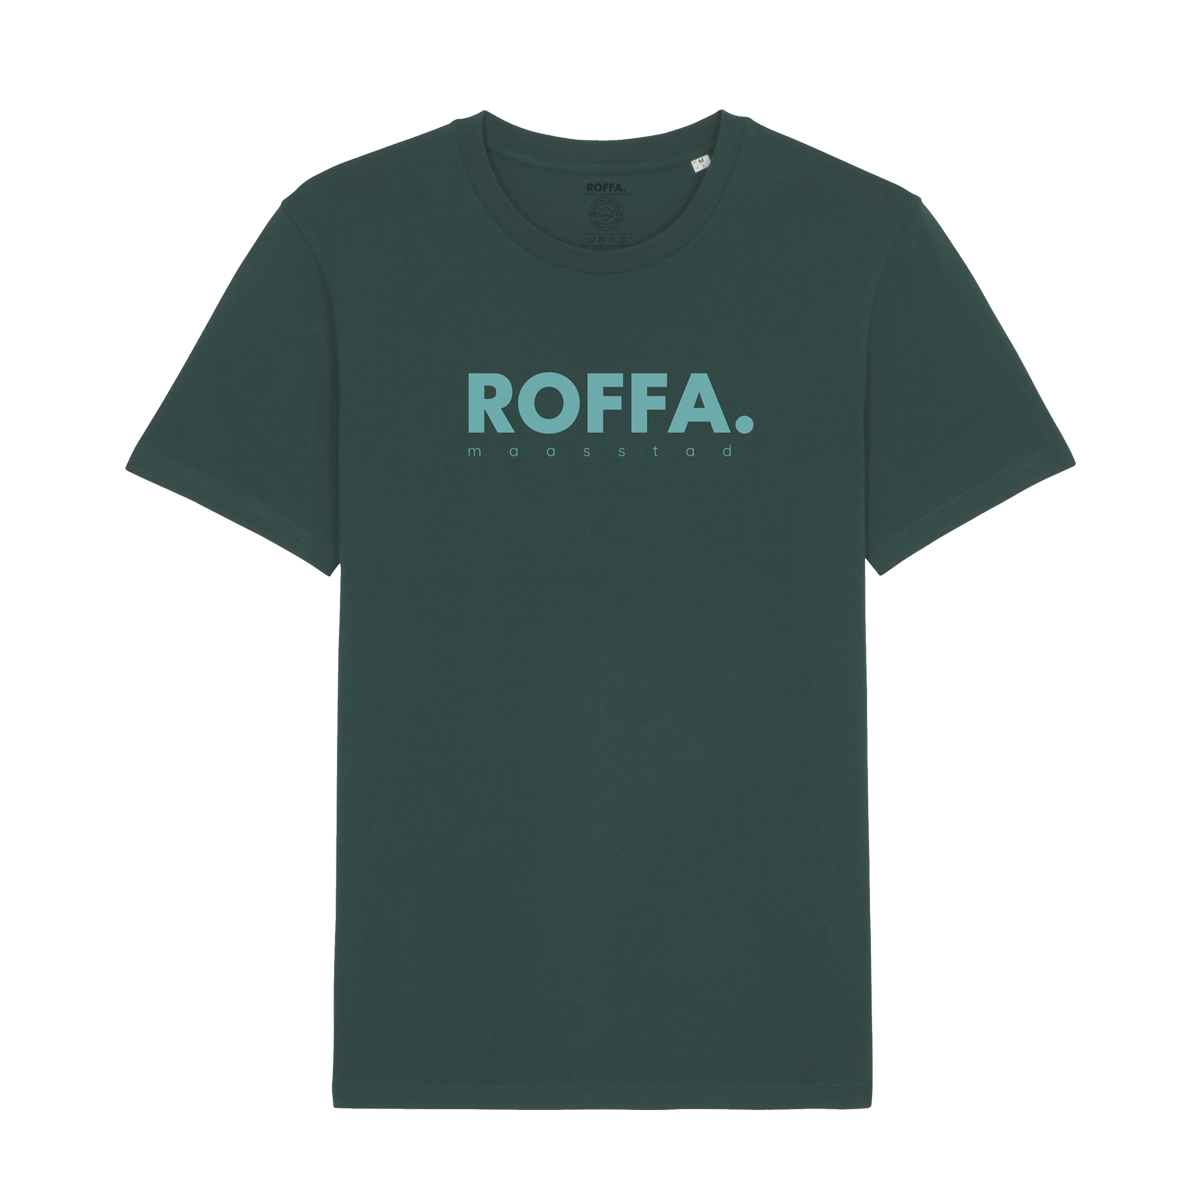 Groen t-shirt met blauw Roffa logo